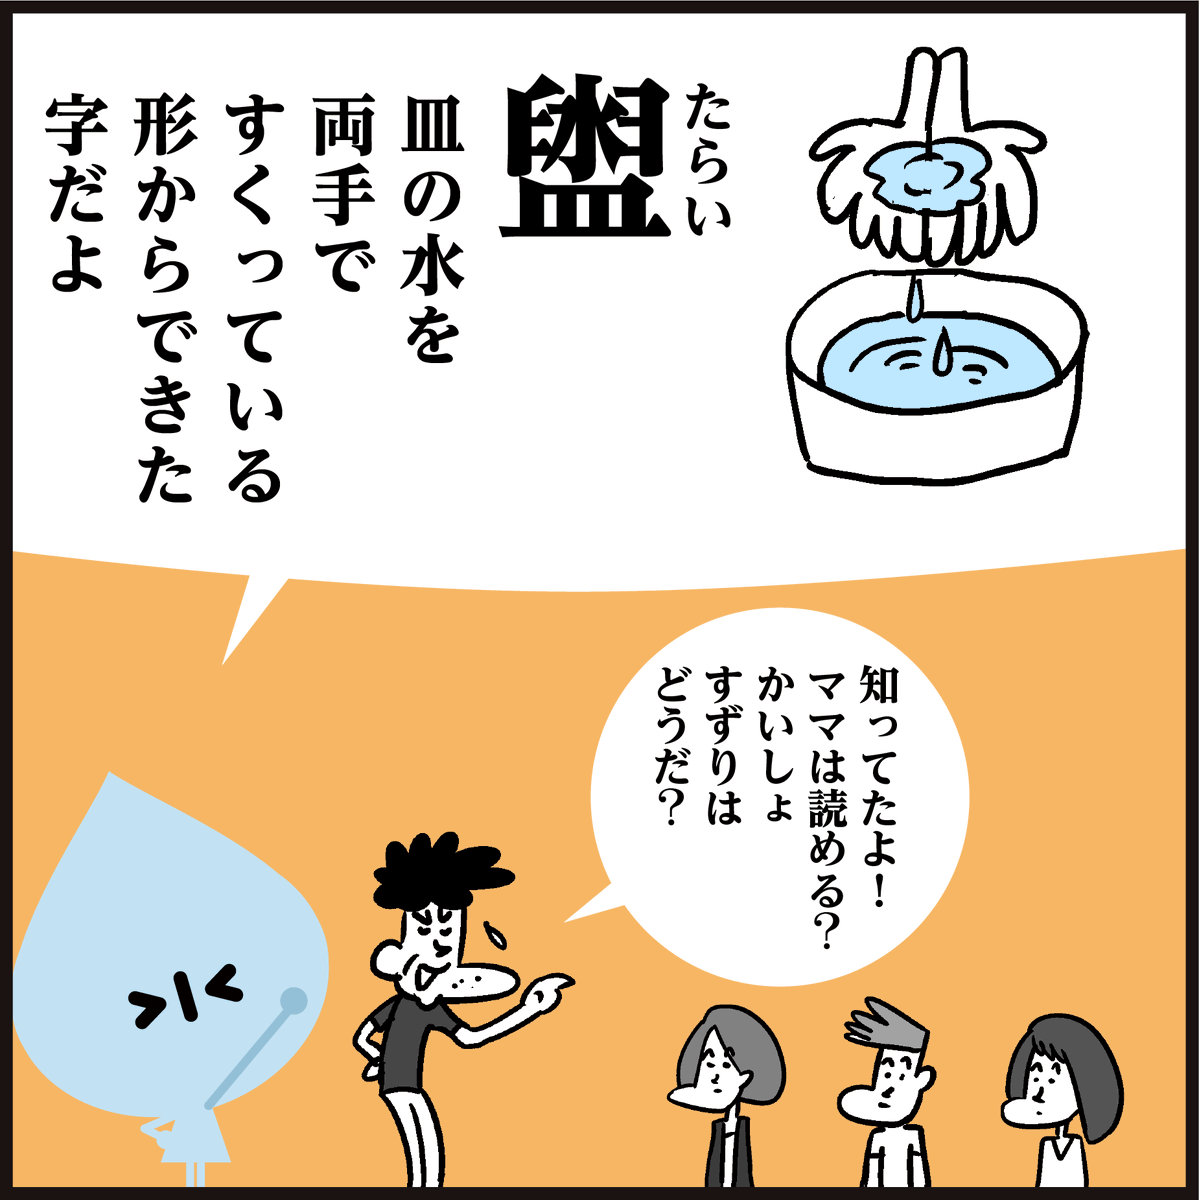 漢字 再従姉妹 読める いとこ とは違うし イラスト 4コマ かんじもん Kanjimon の漫画